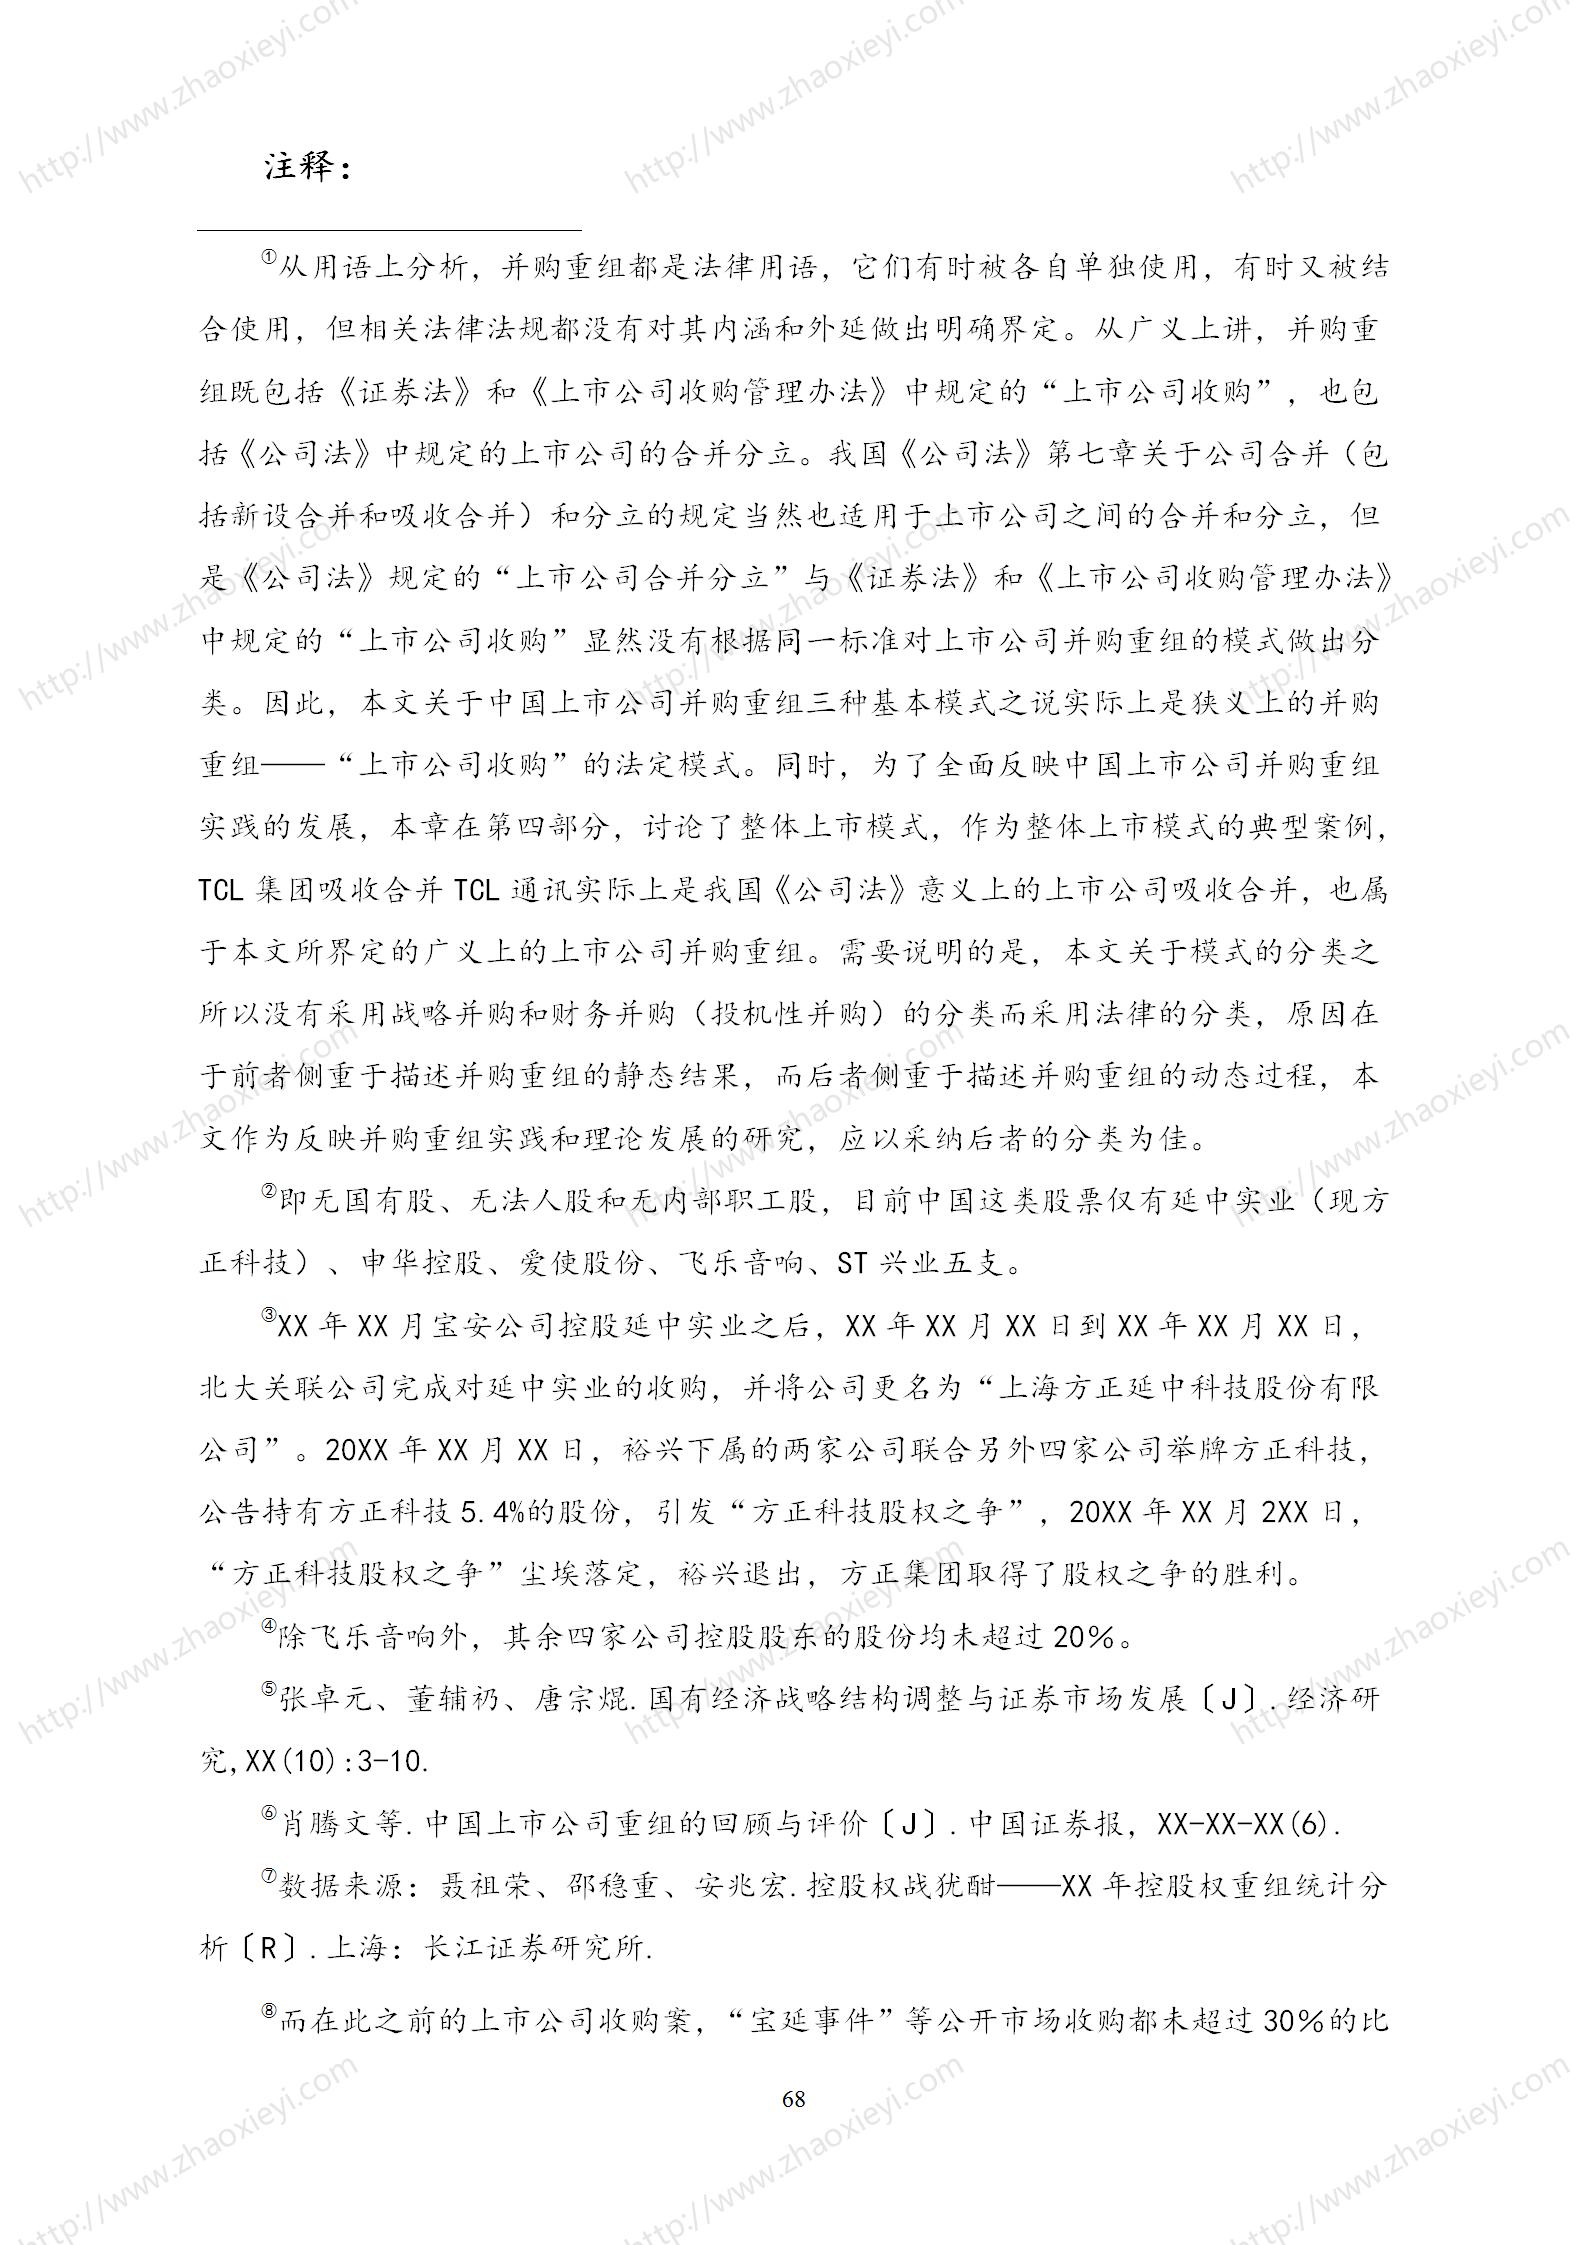 中国上市公司并购重组的模式研究_39.jpg